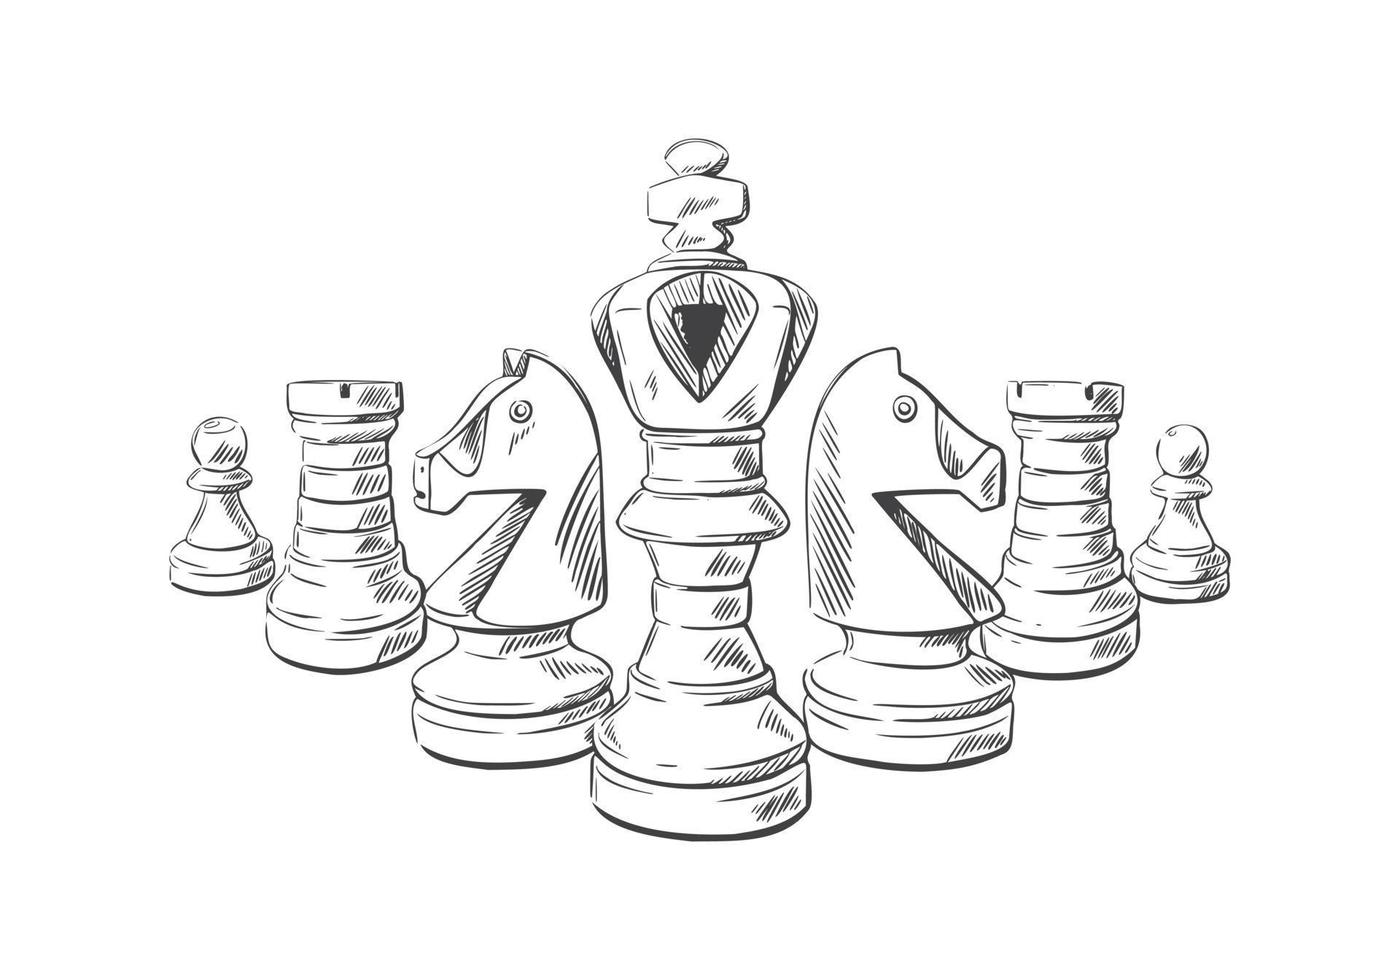 peças de xadrez em estilo de desenho. fundo da web do clube de